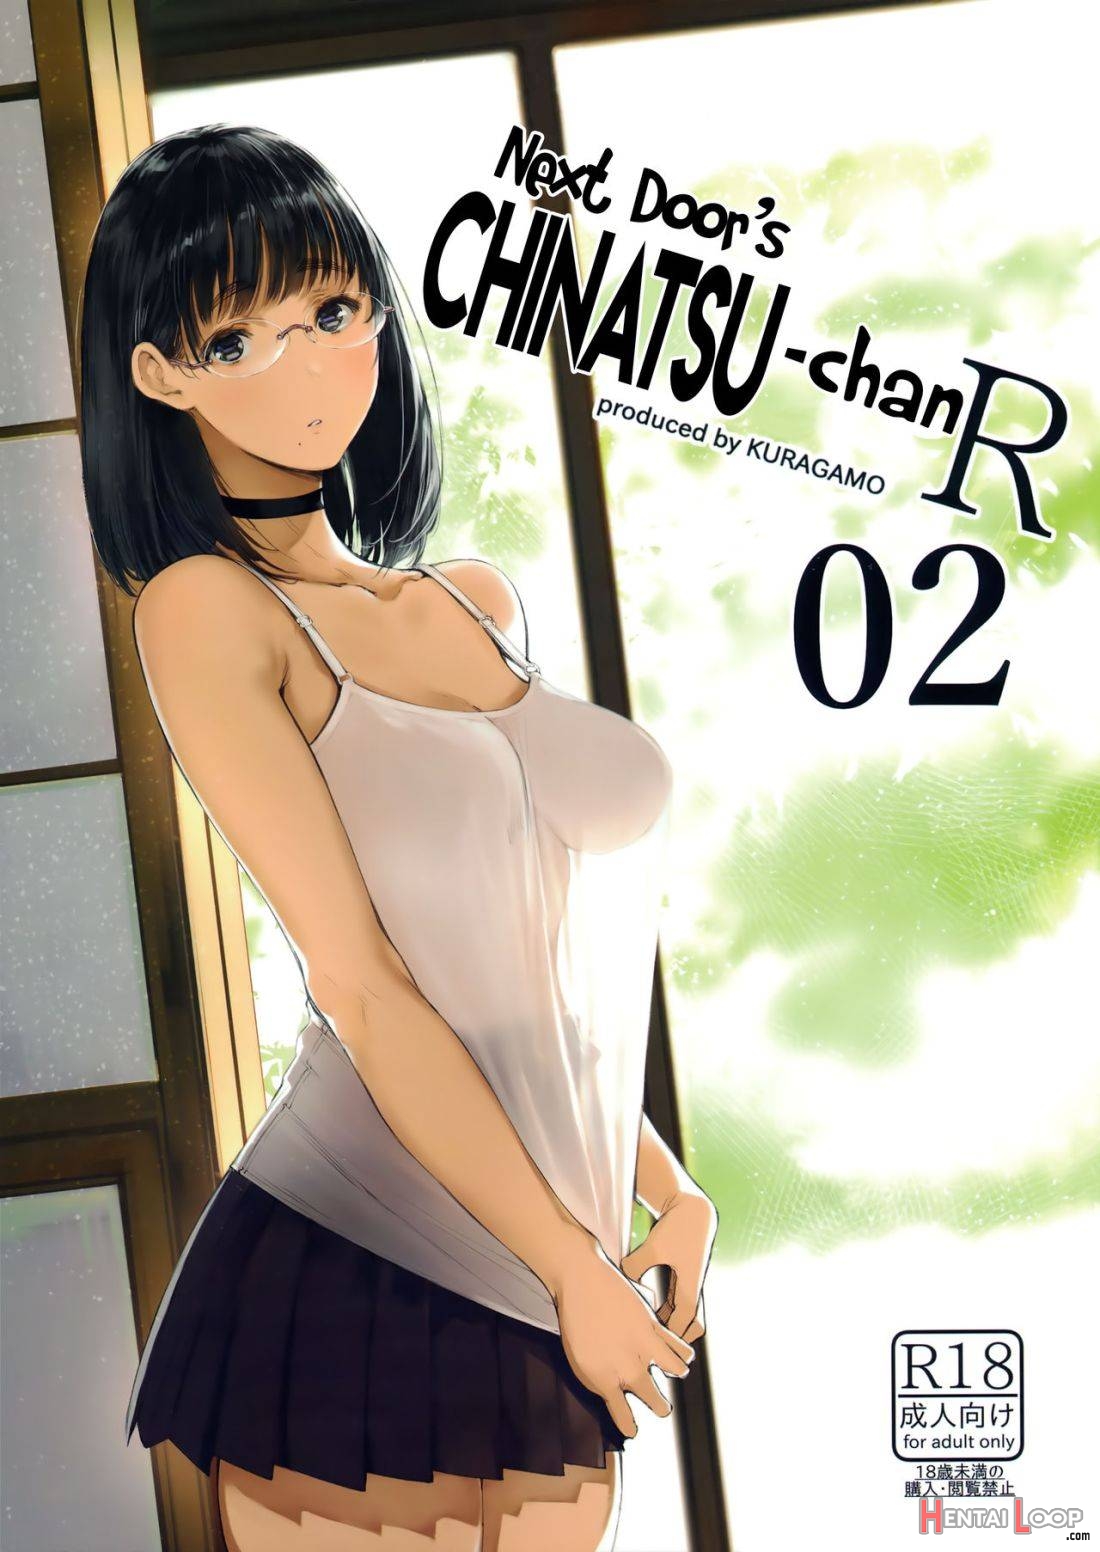 Tonari No Chinatsu-chan R 02 page 1